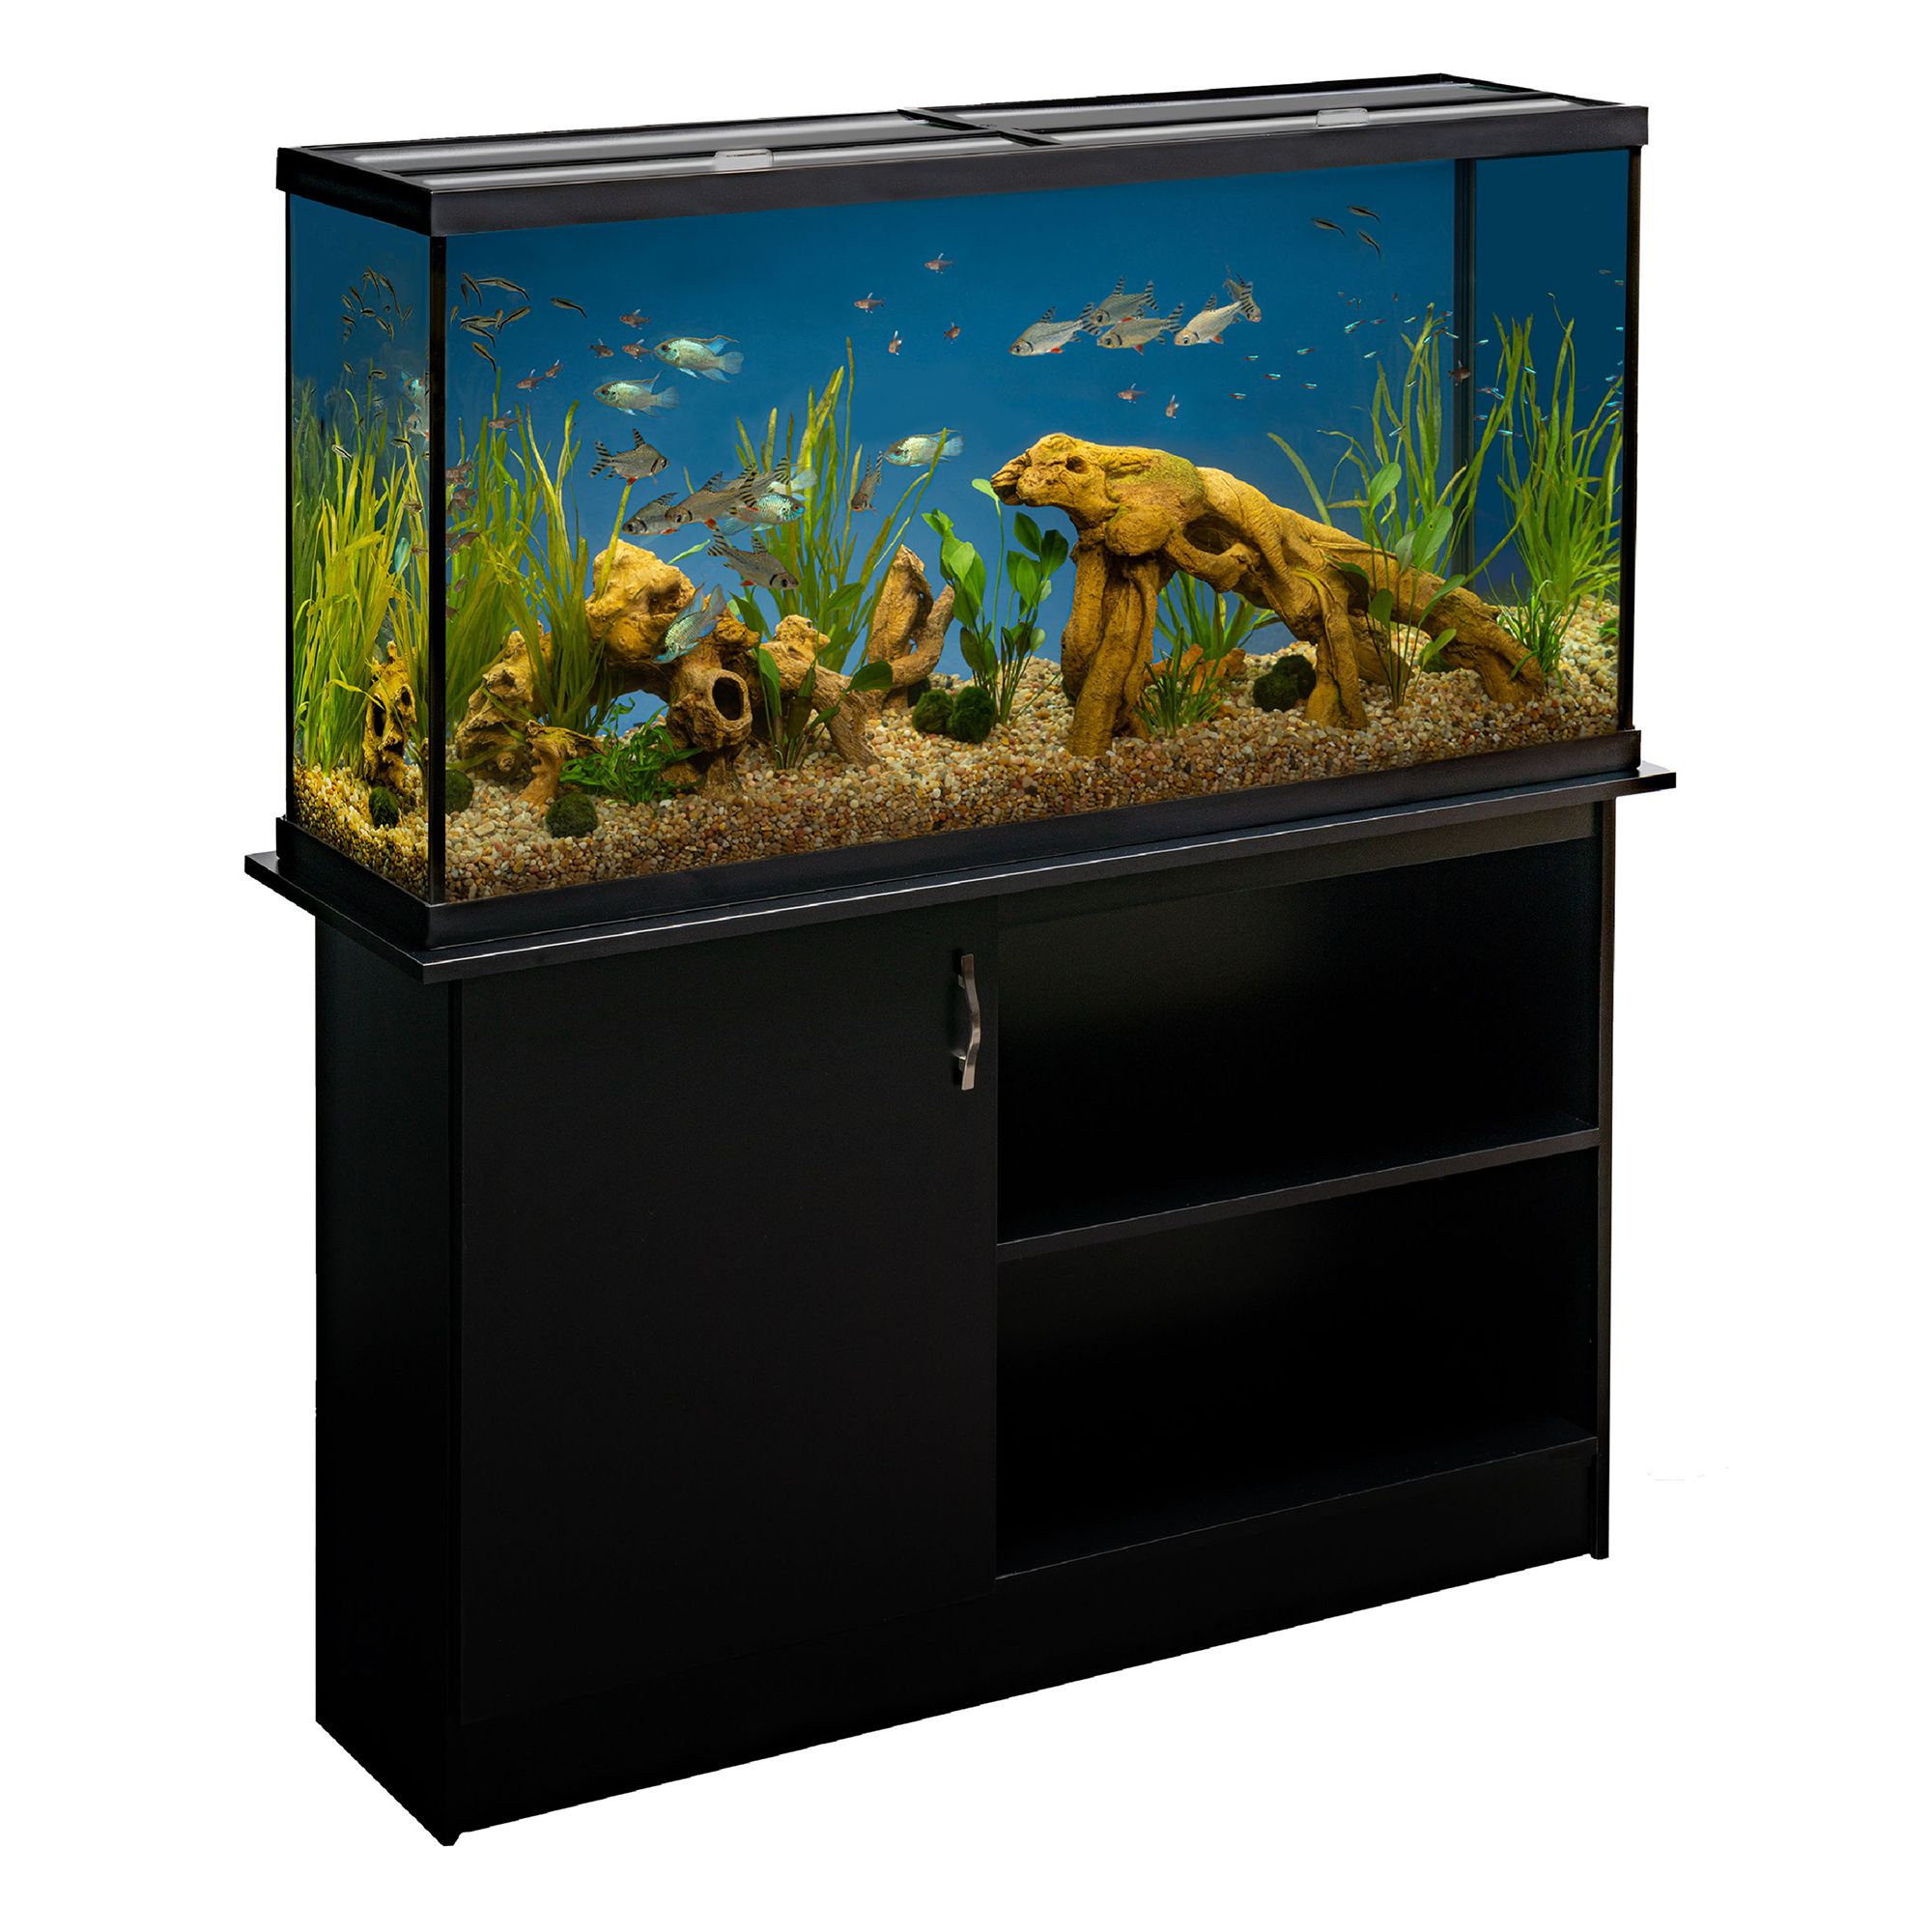 Marineland® Modern LED Aquarium & Stand Ensemble - 60 Gallon